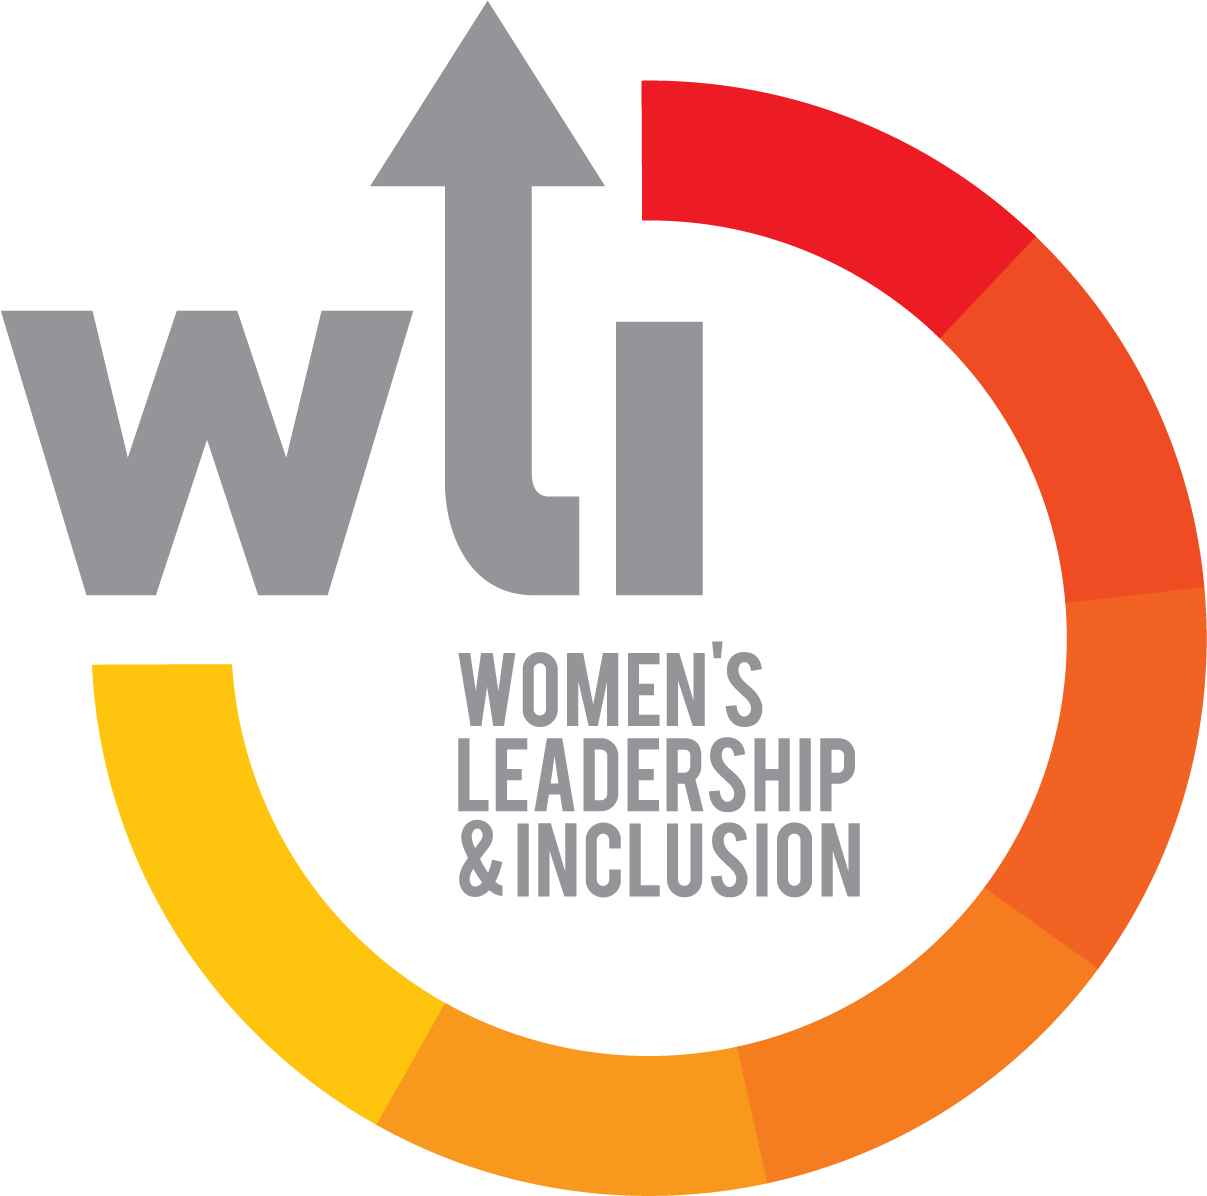 Logótipo composto pela inscrição, em cinzento, WLI – Women's Leadership & Inclusion, rodeada por um círculo interrompido com um gradiente de tons quentes (vermelhos, laranjas e amarelos).